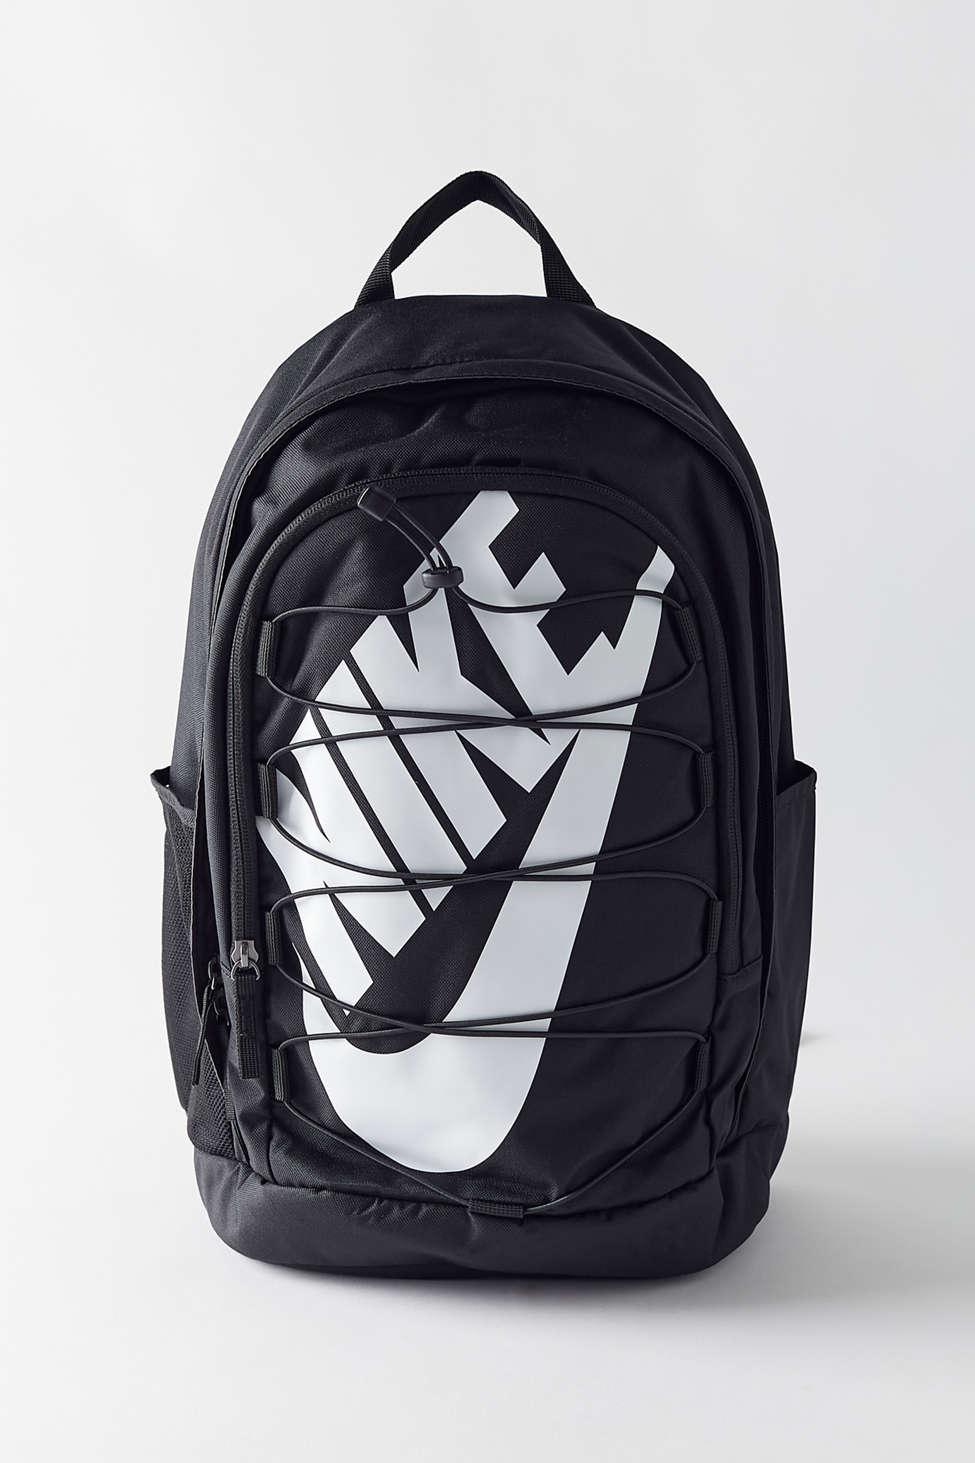 Nike Hayward 2.0 Backpack in Black - Lyst